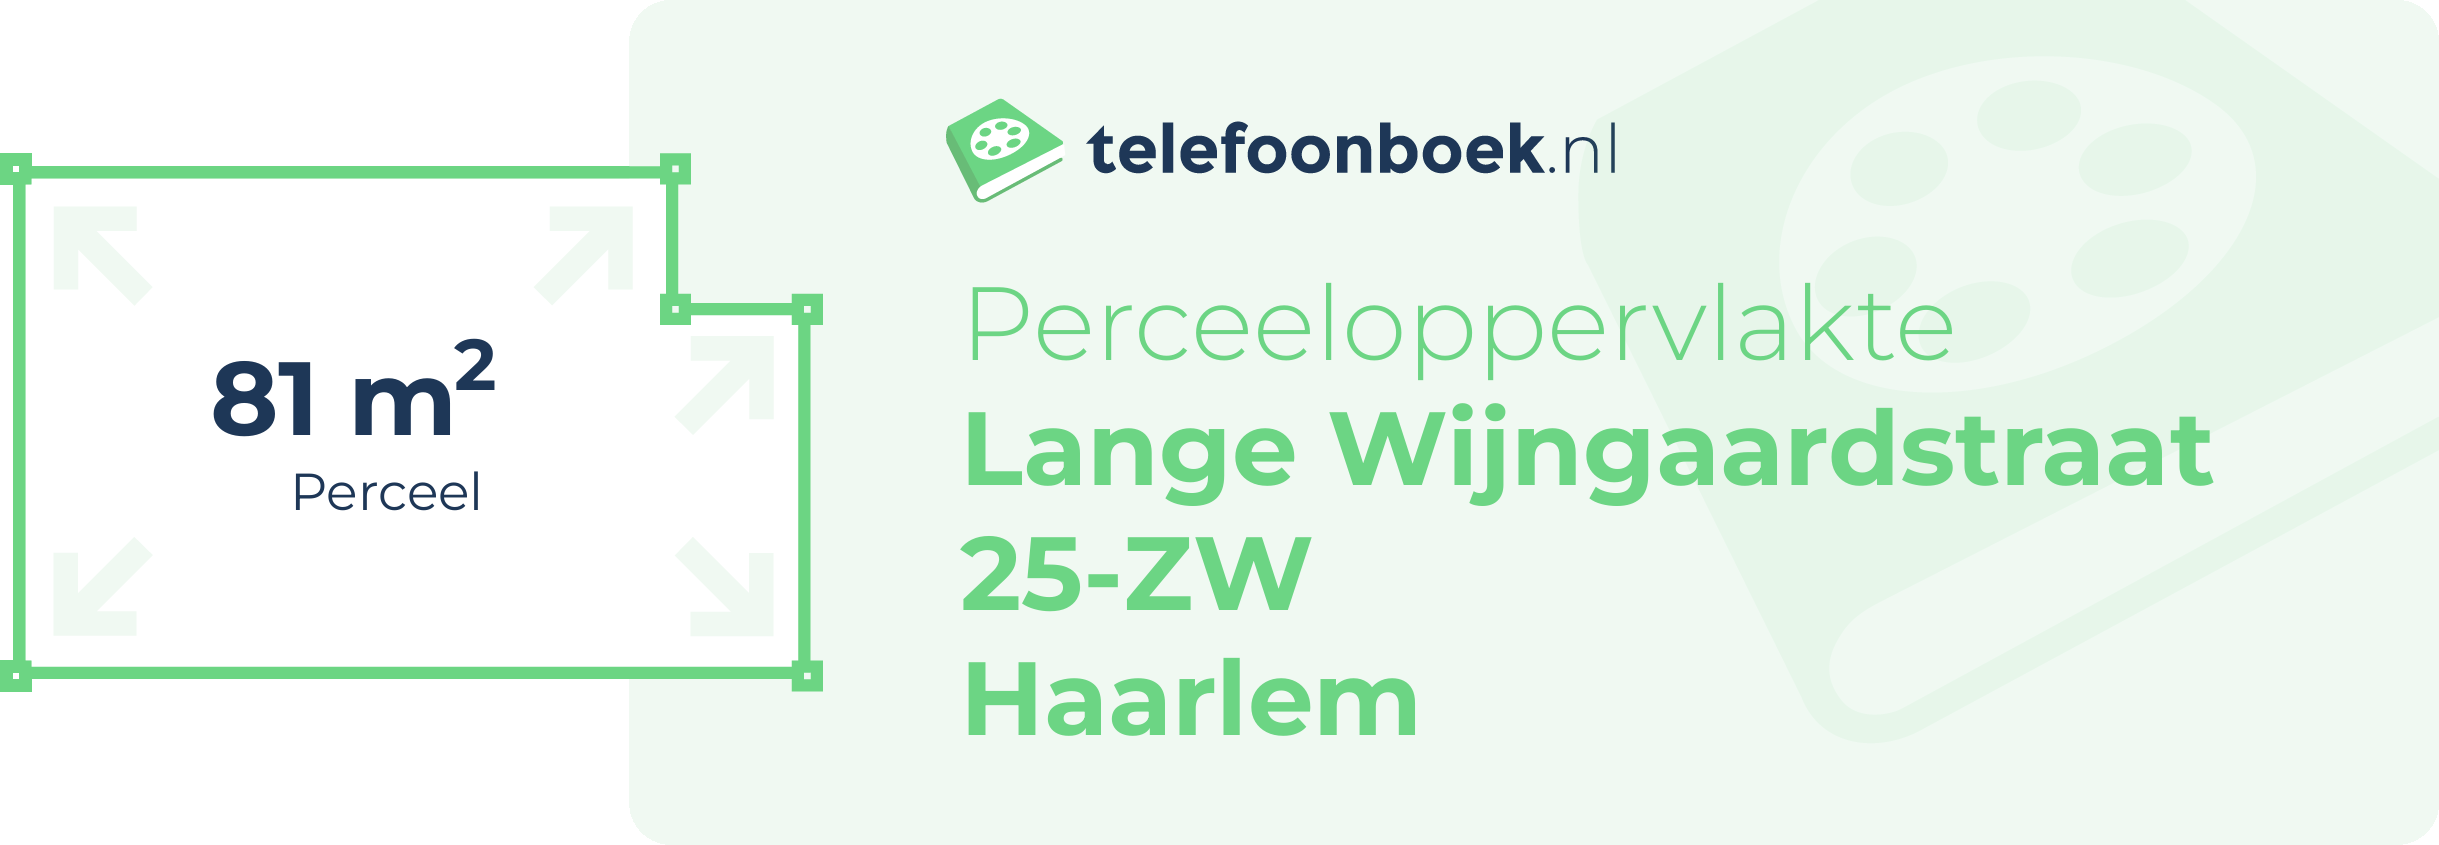 Perceeloppervlakte Lange Wijngaardstraat 25-ZW Haarlem